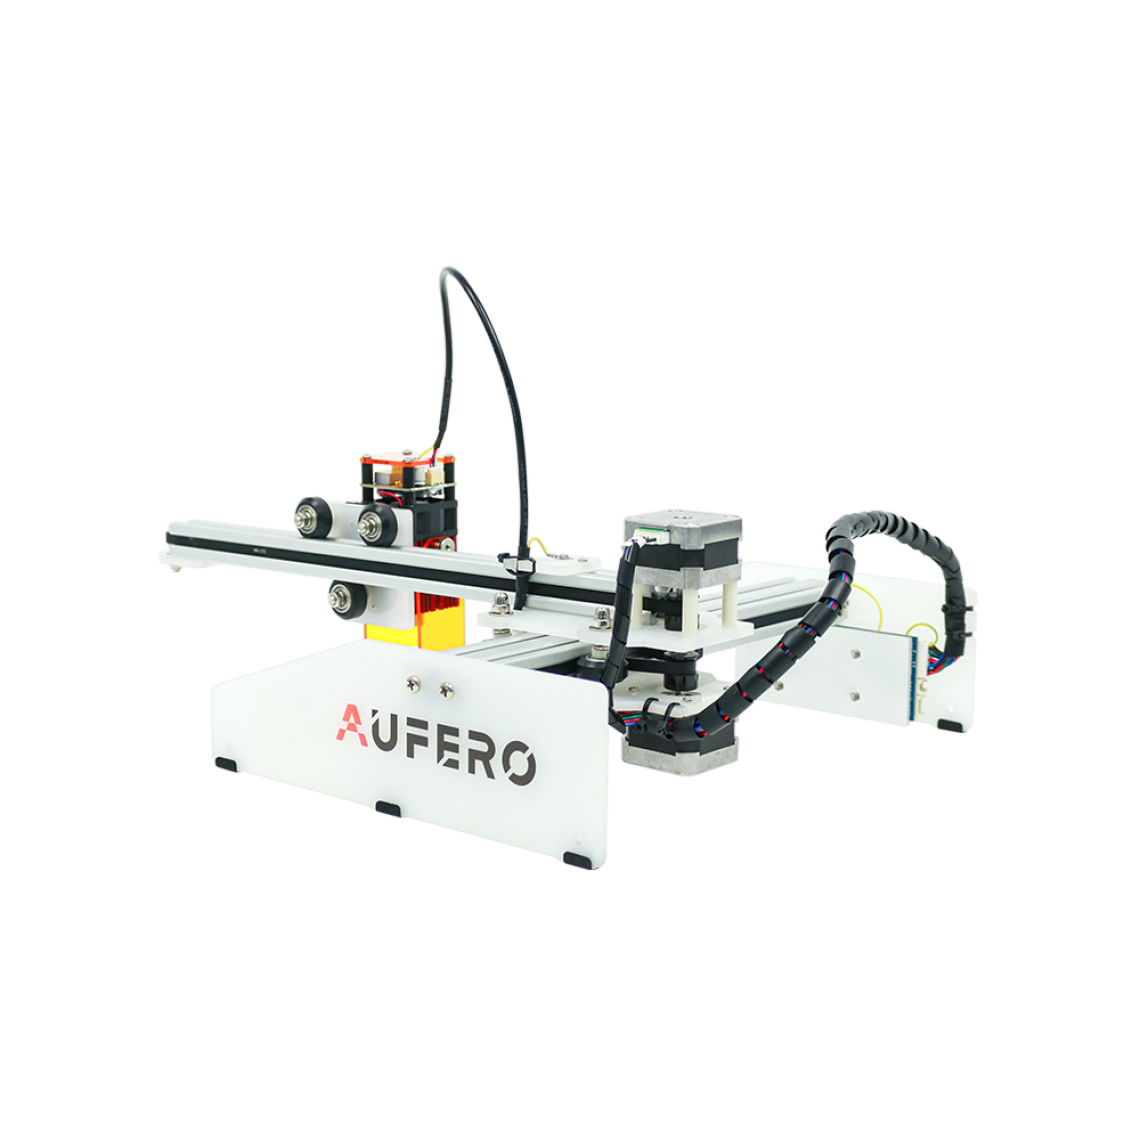 Ortur - Machine à graver Pré-assemblé DIY Aufero Laser 1 LU2-2 180*180mm Grande Zone de Gravure - Imprimante Laser